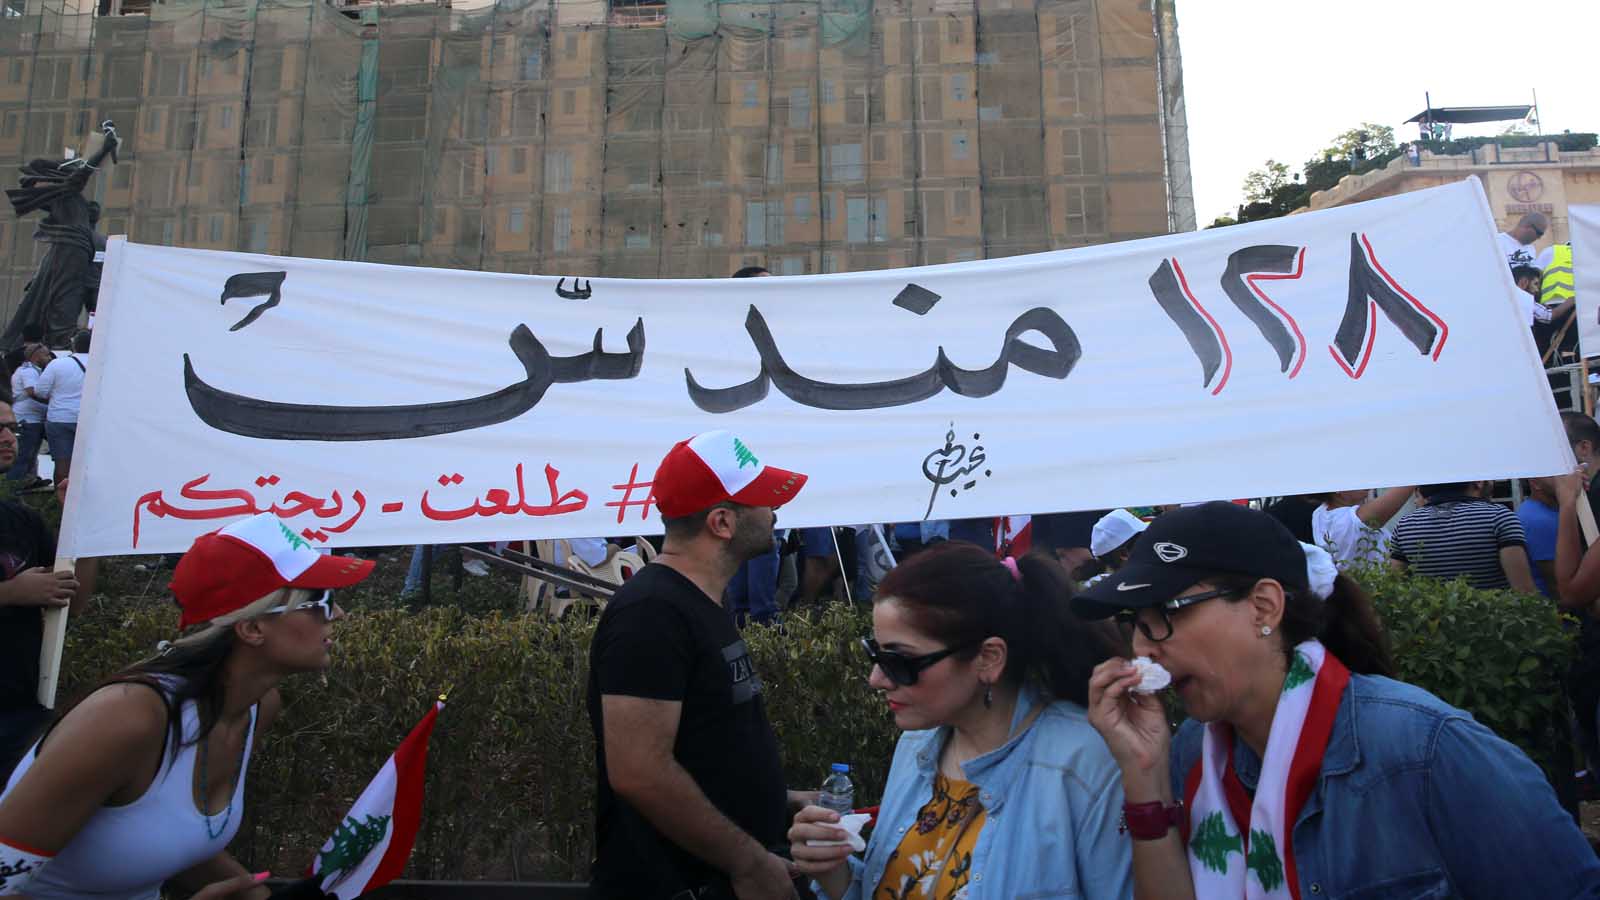 سوريون في التظاهرات: بين الحماسة والخوف و"الاستخفاف"